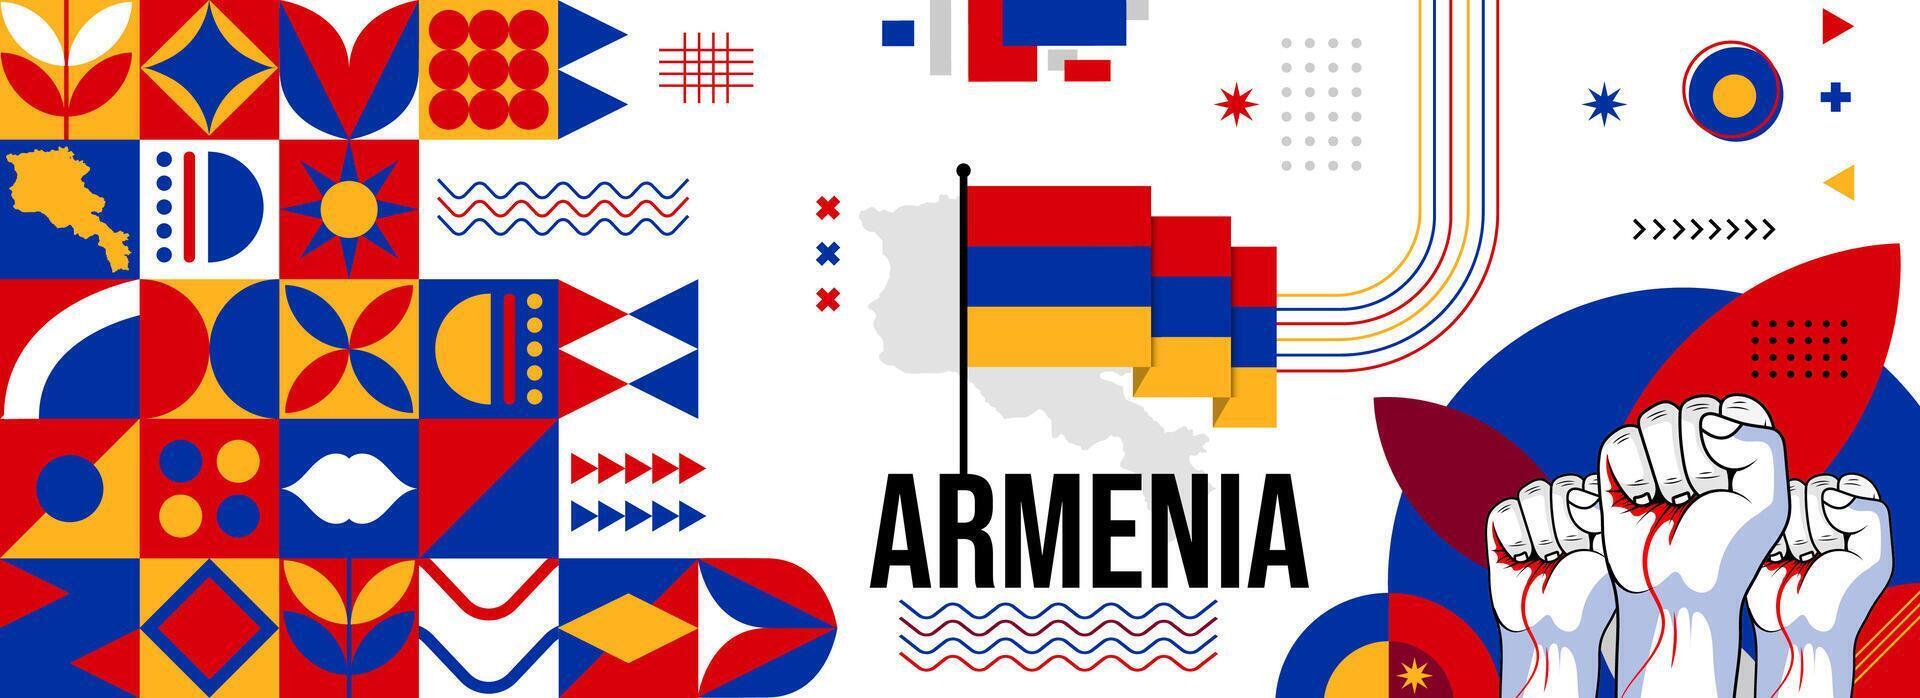 Armenia nacional o independencia día bandera para país celebracion. bandera y mapa de Armenia con elevado puños moderno retro diseño con tiporgafia resumen geométrico iconos vector ilustración